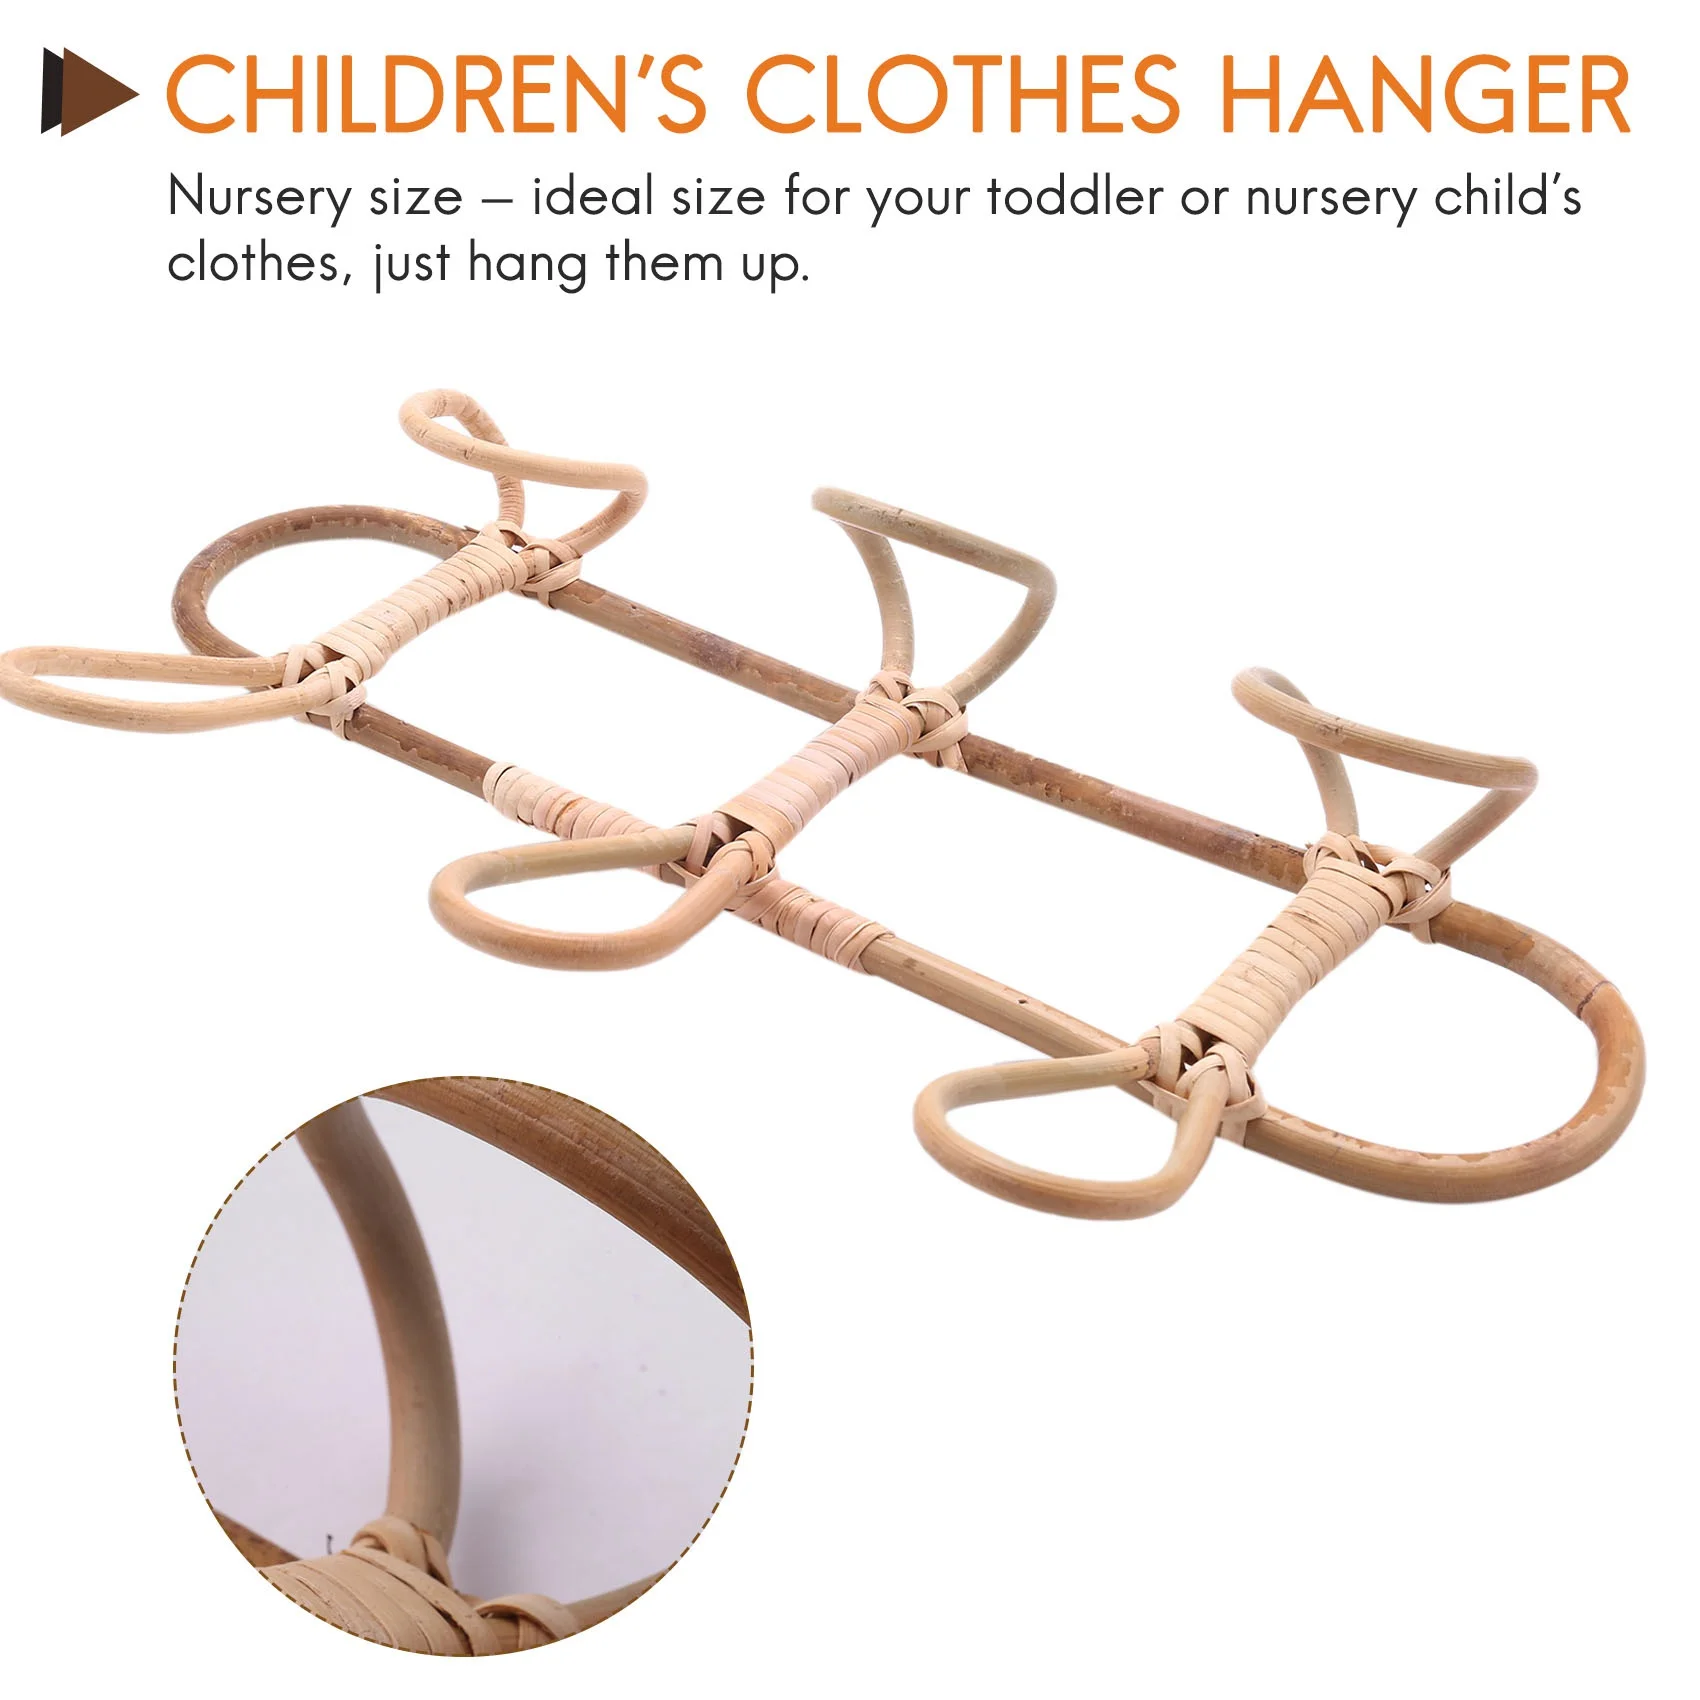 Настенные крючки из ротанга, Органайзер для детской одежды, вешалка для одежды, крючок для подвешивания шляп из ротанга для детей 4